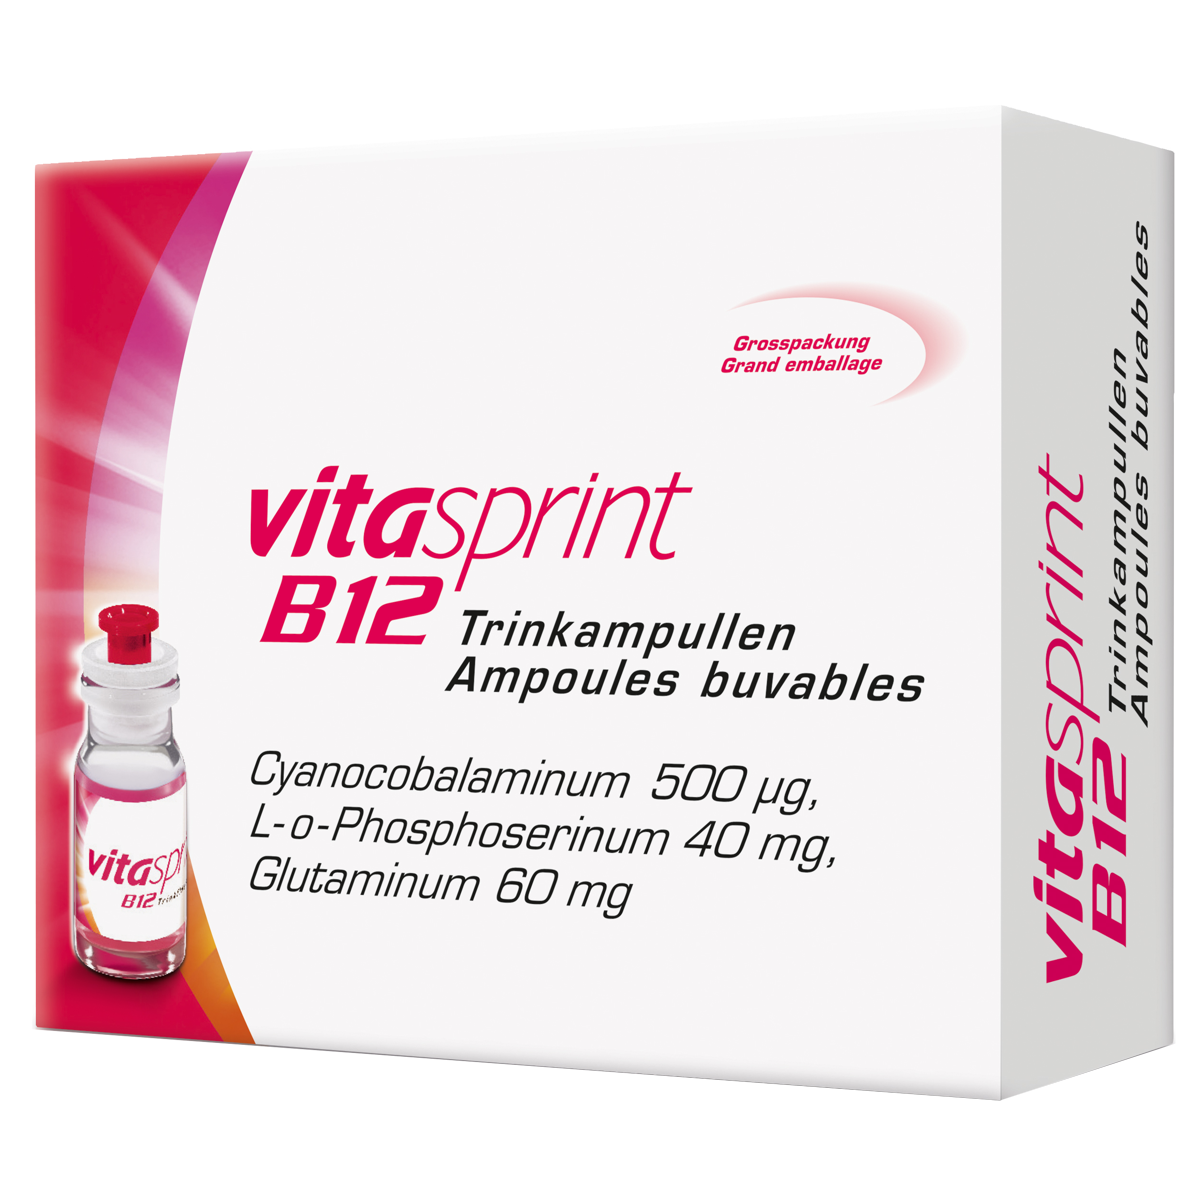 Vitasprint B12 Trinkampullen als Aufbaukur für eine bessere geistige und körperliche Leistungsfähigkeit.